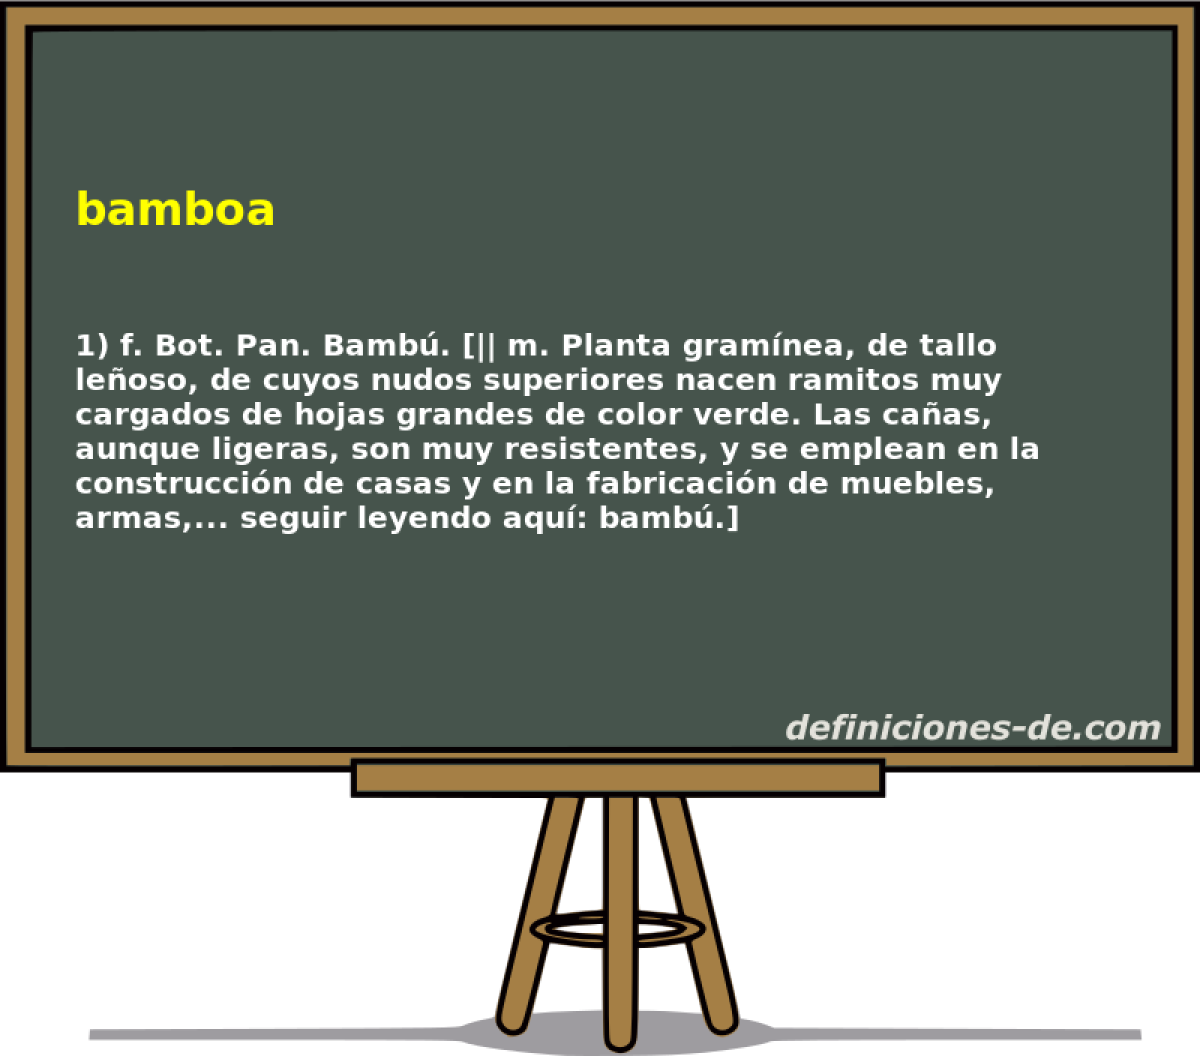 bamboa 